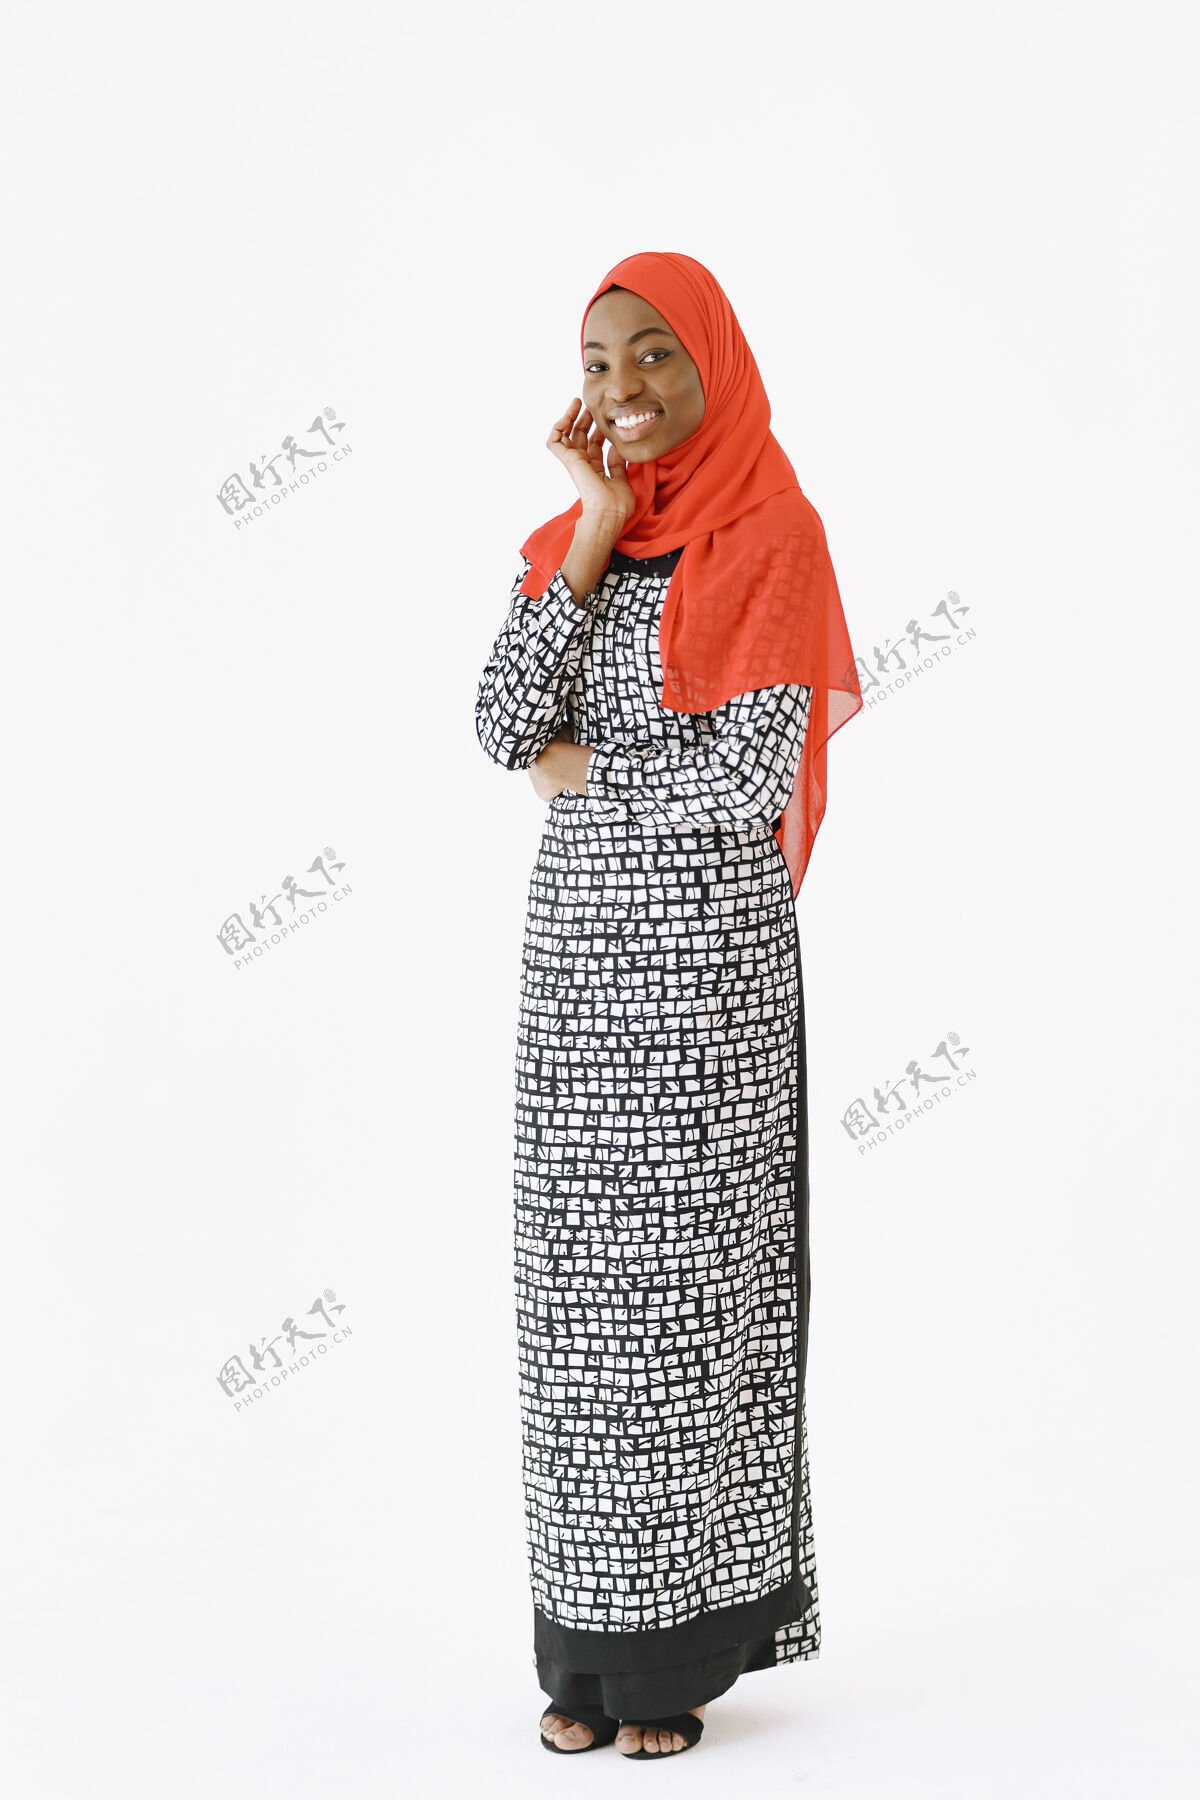 非洲可爱满足的宗教穆斯林女子头像 面带温和微笑 皮肤黝黑健康 头上戴围巾隔离在白色背景上阿拉伯语服装伊斯兰教